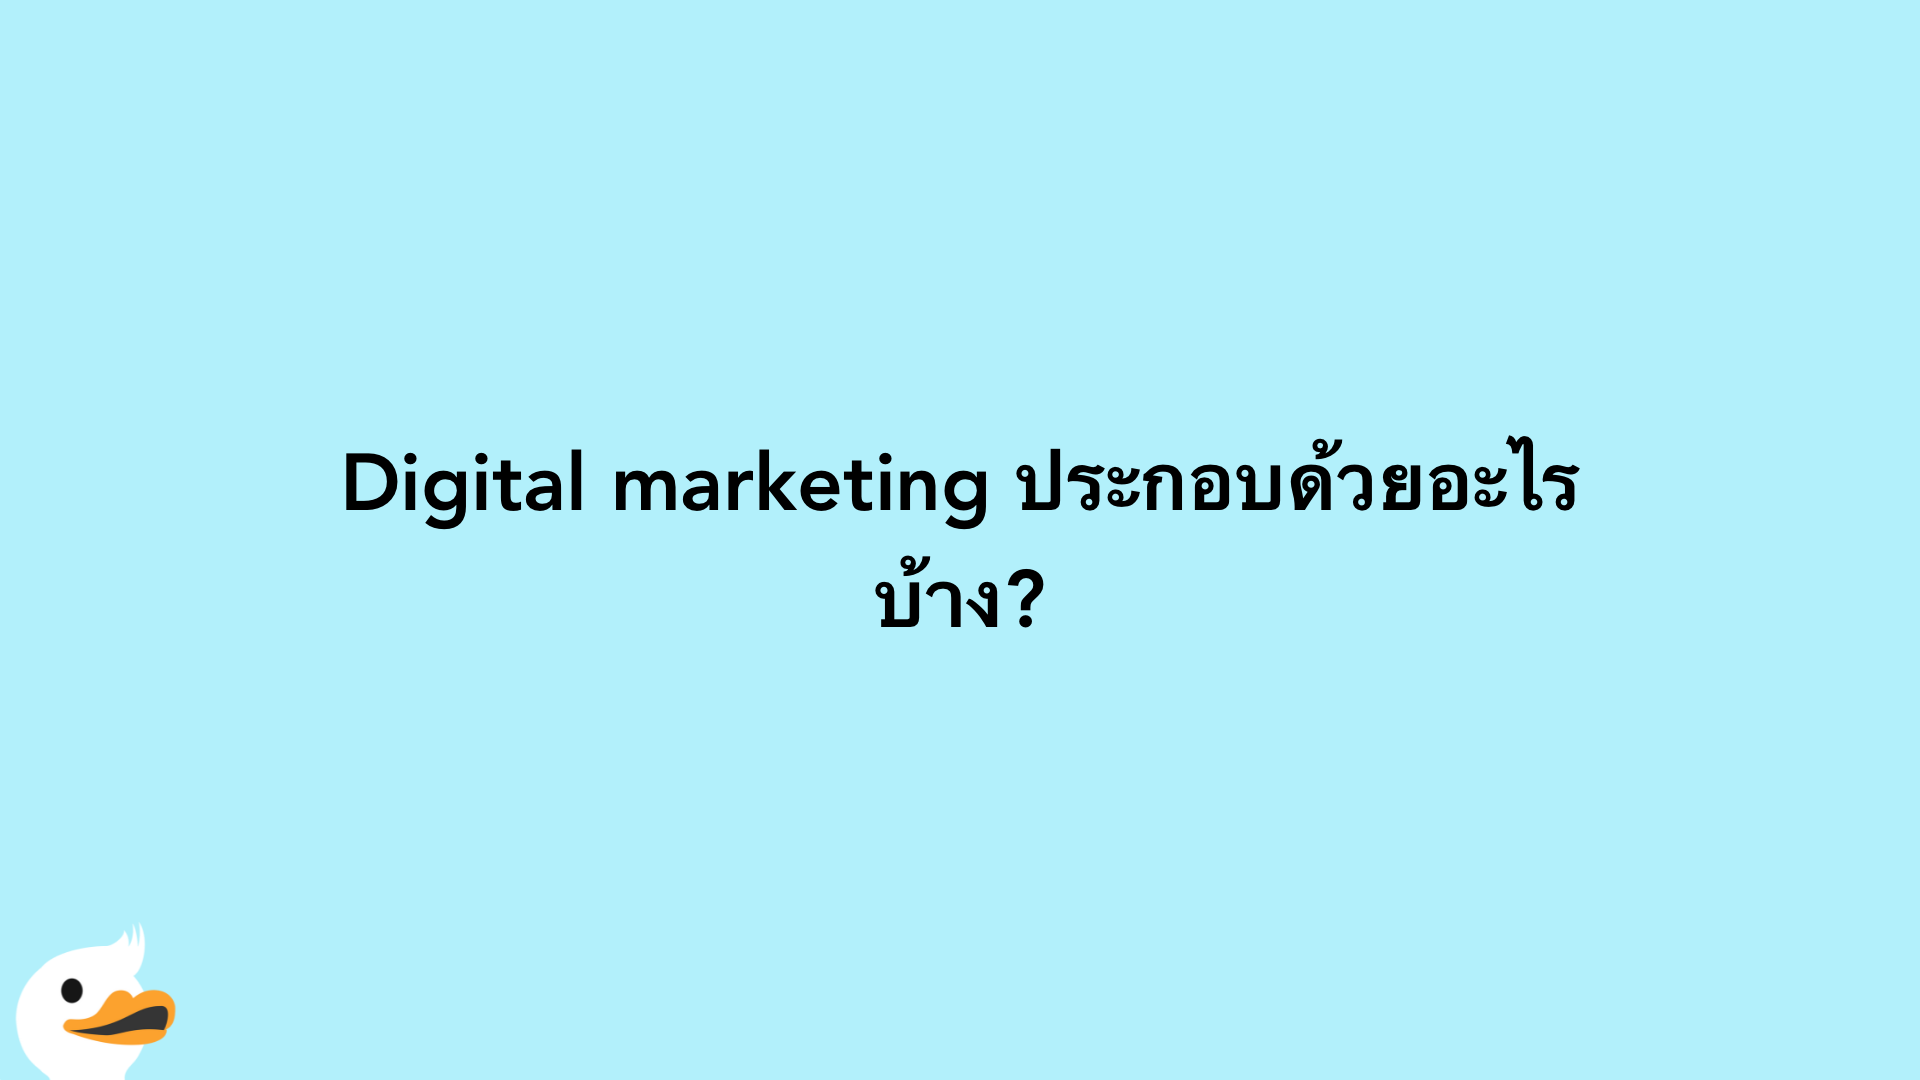 Digital marketing ประกอบด้วยอะไรบ้าง?